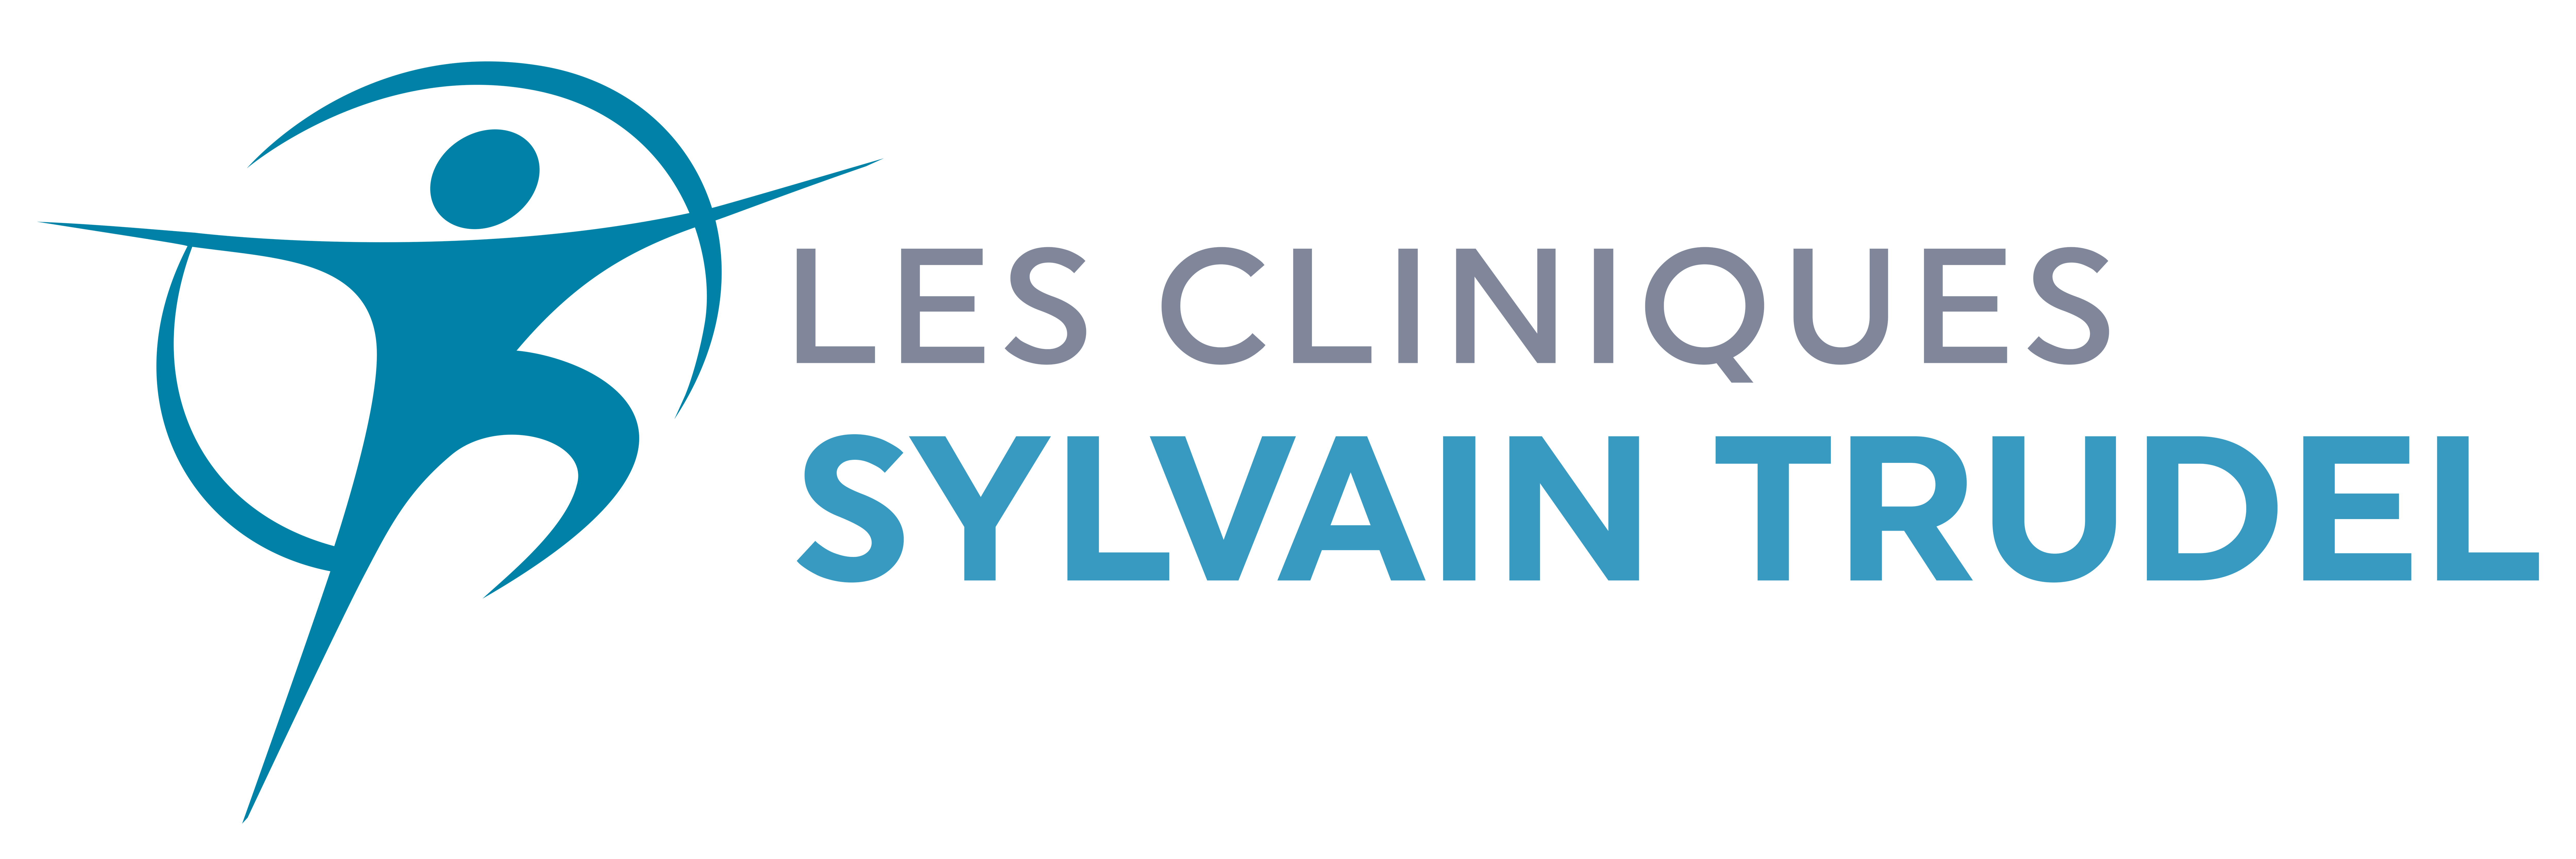 Cliniques Sylvain Trudel